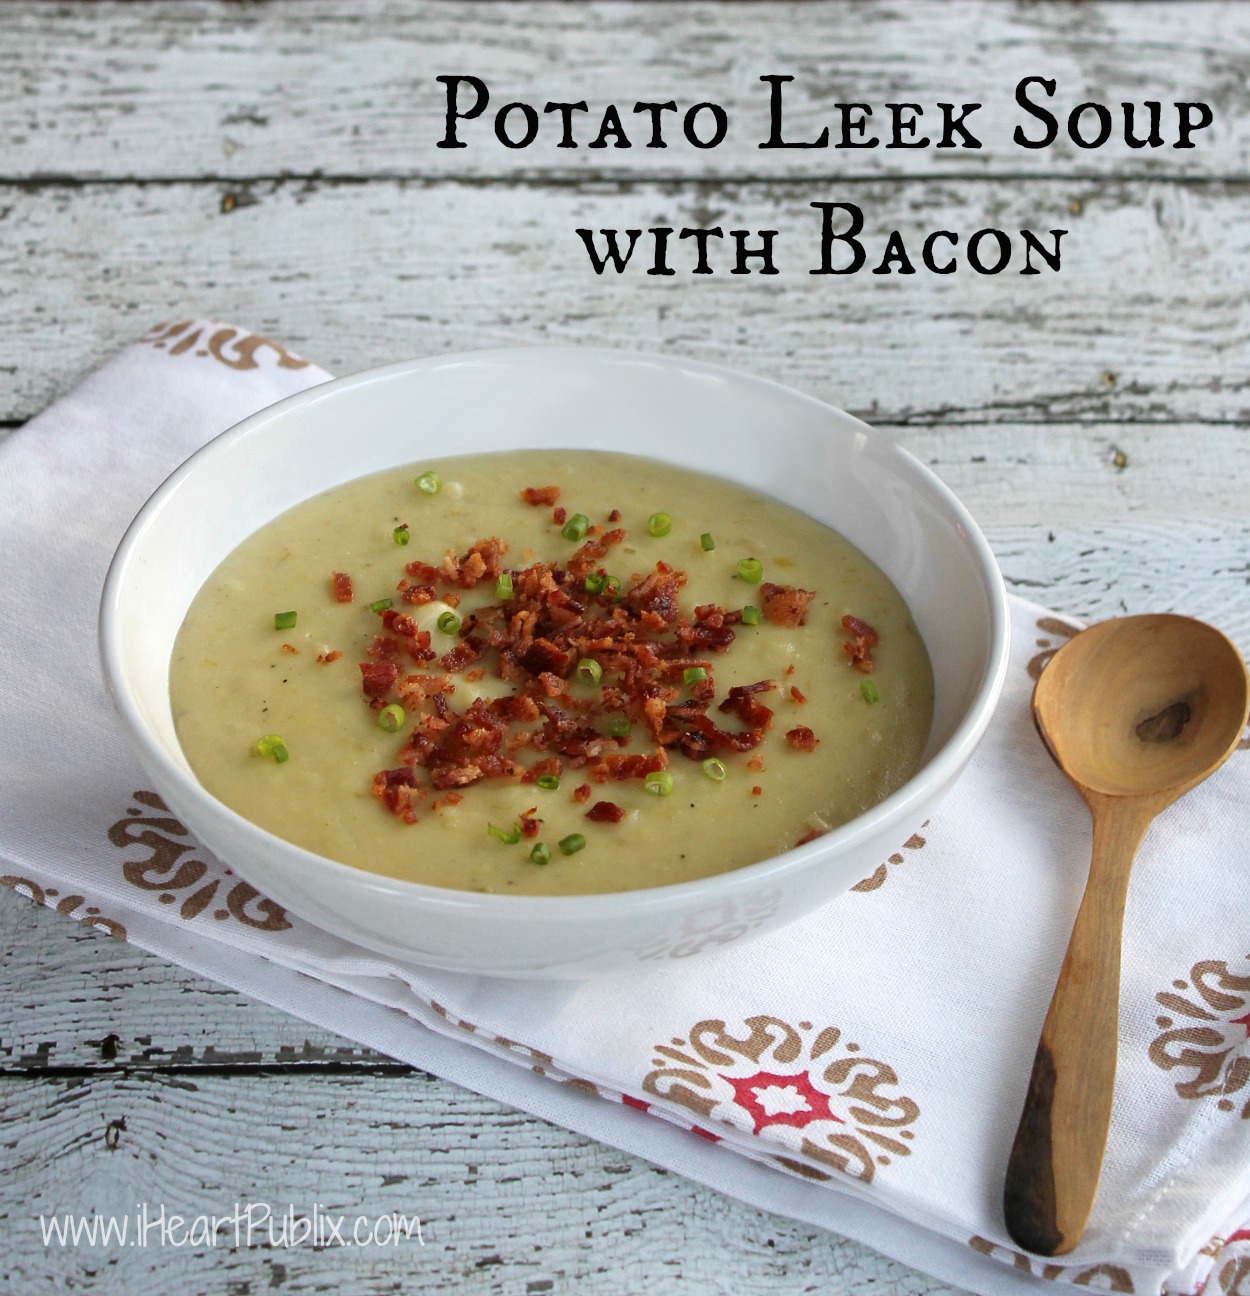 Potato Leek Soup With Bacon - Easy & Delicious With Farmland Bacon